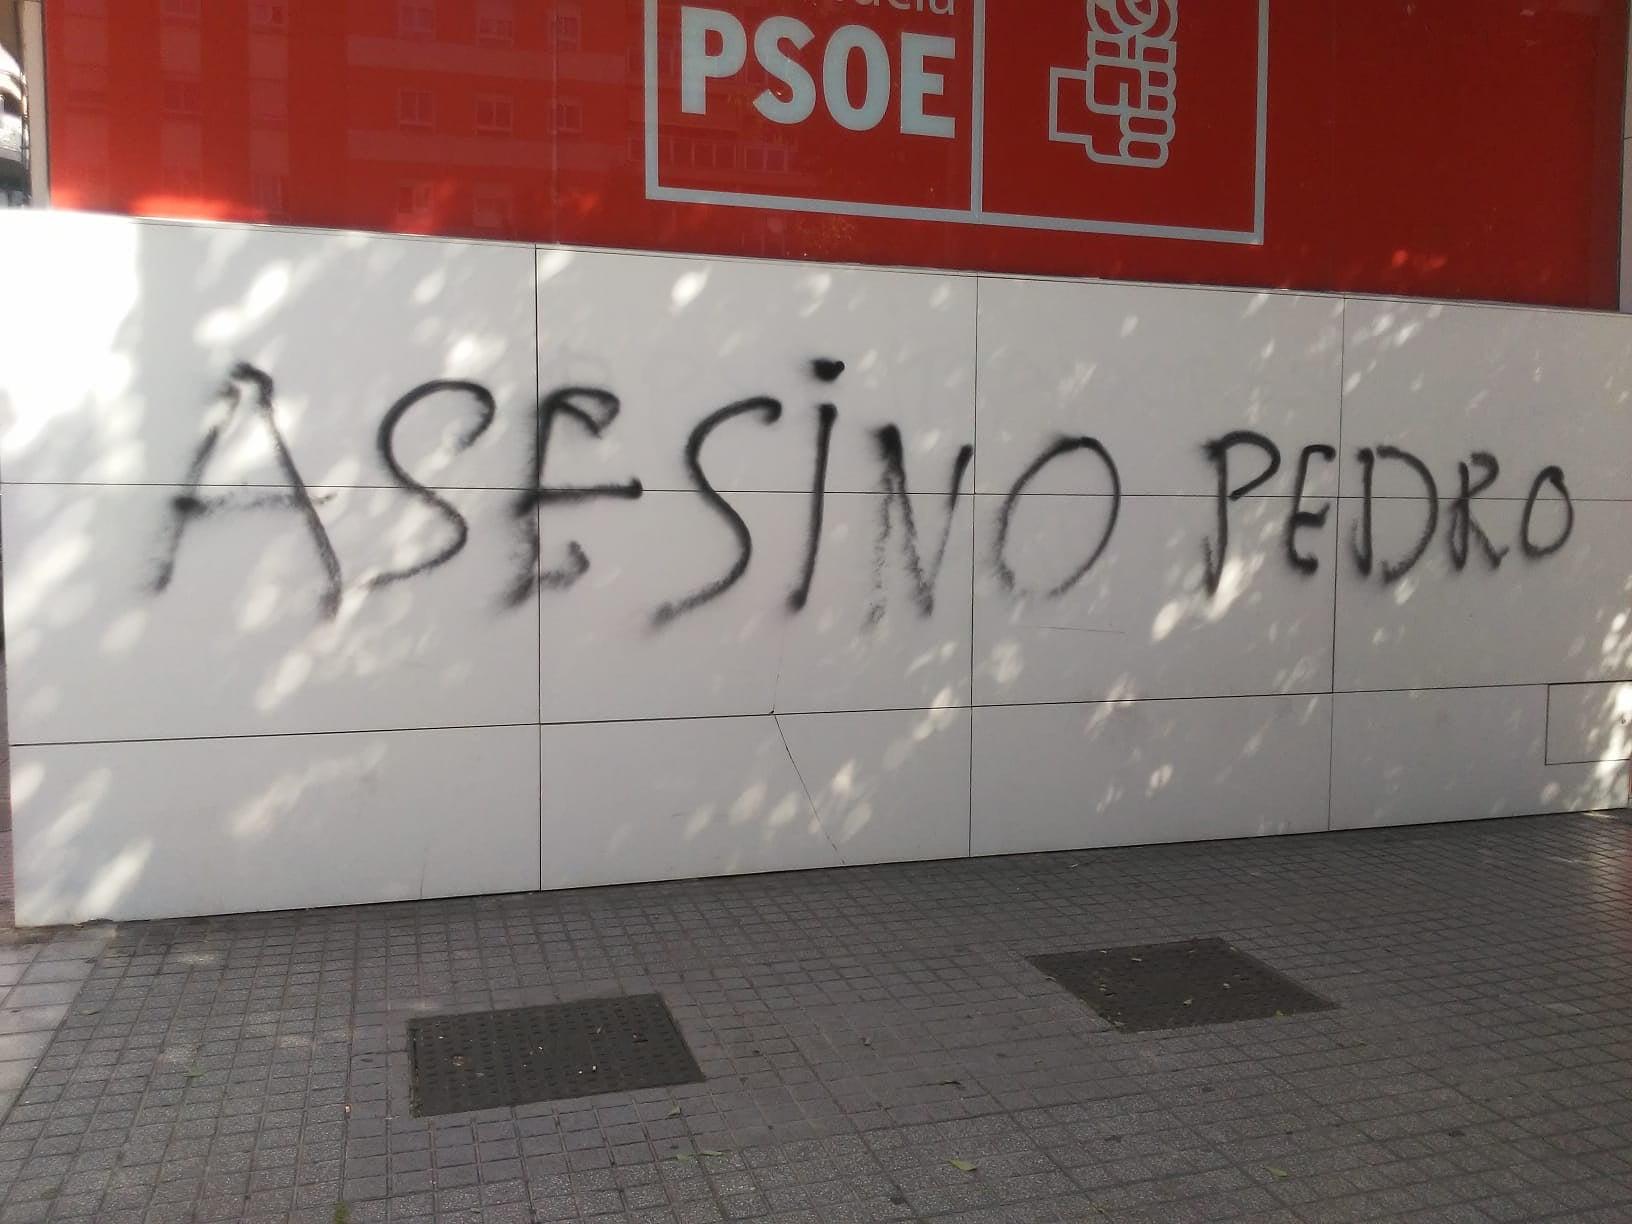 Pintada de 'Asesino Pedro' en la sede del PSOE de Córdoba. Fuente: Twitter.